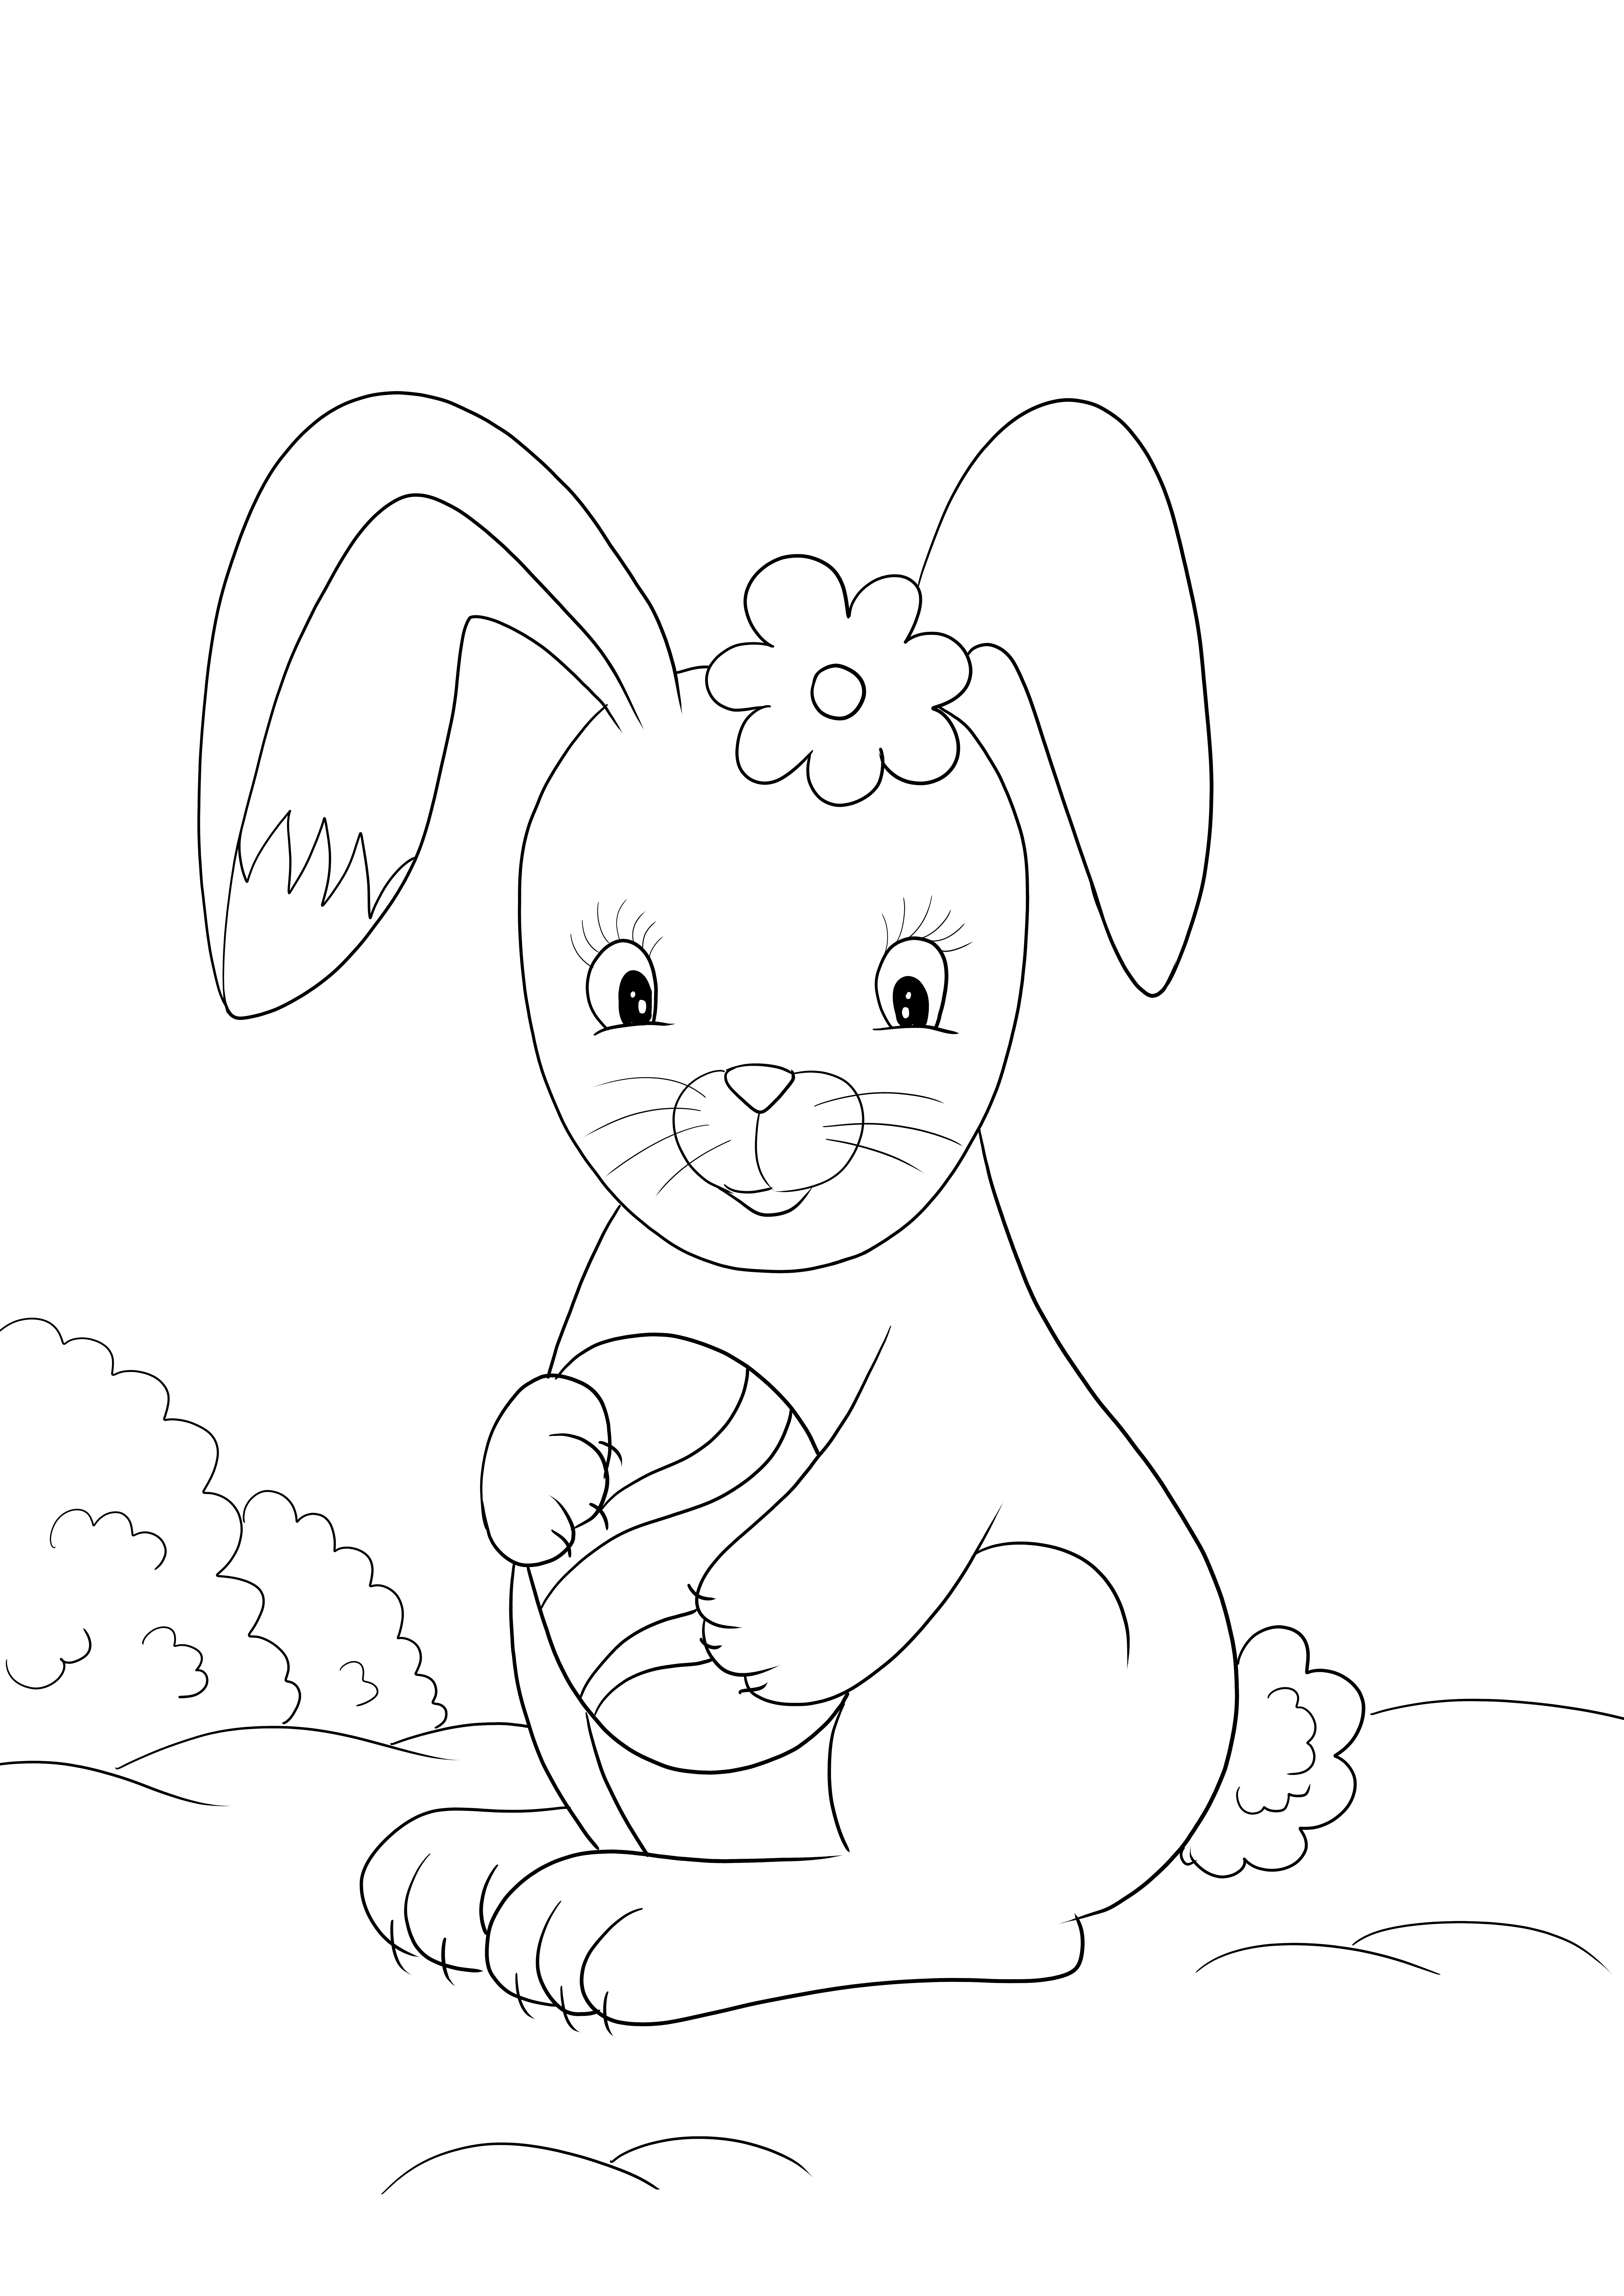 Linda imagem para colorir de coelhinho da páscoa para download ou impressão gratuita